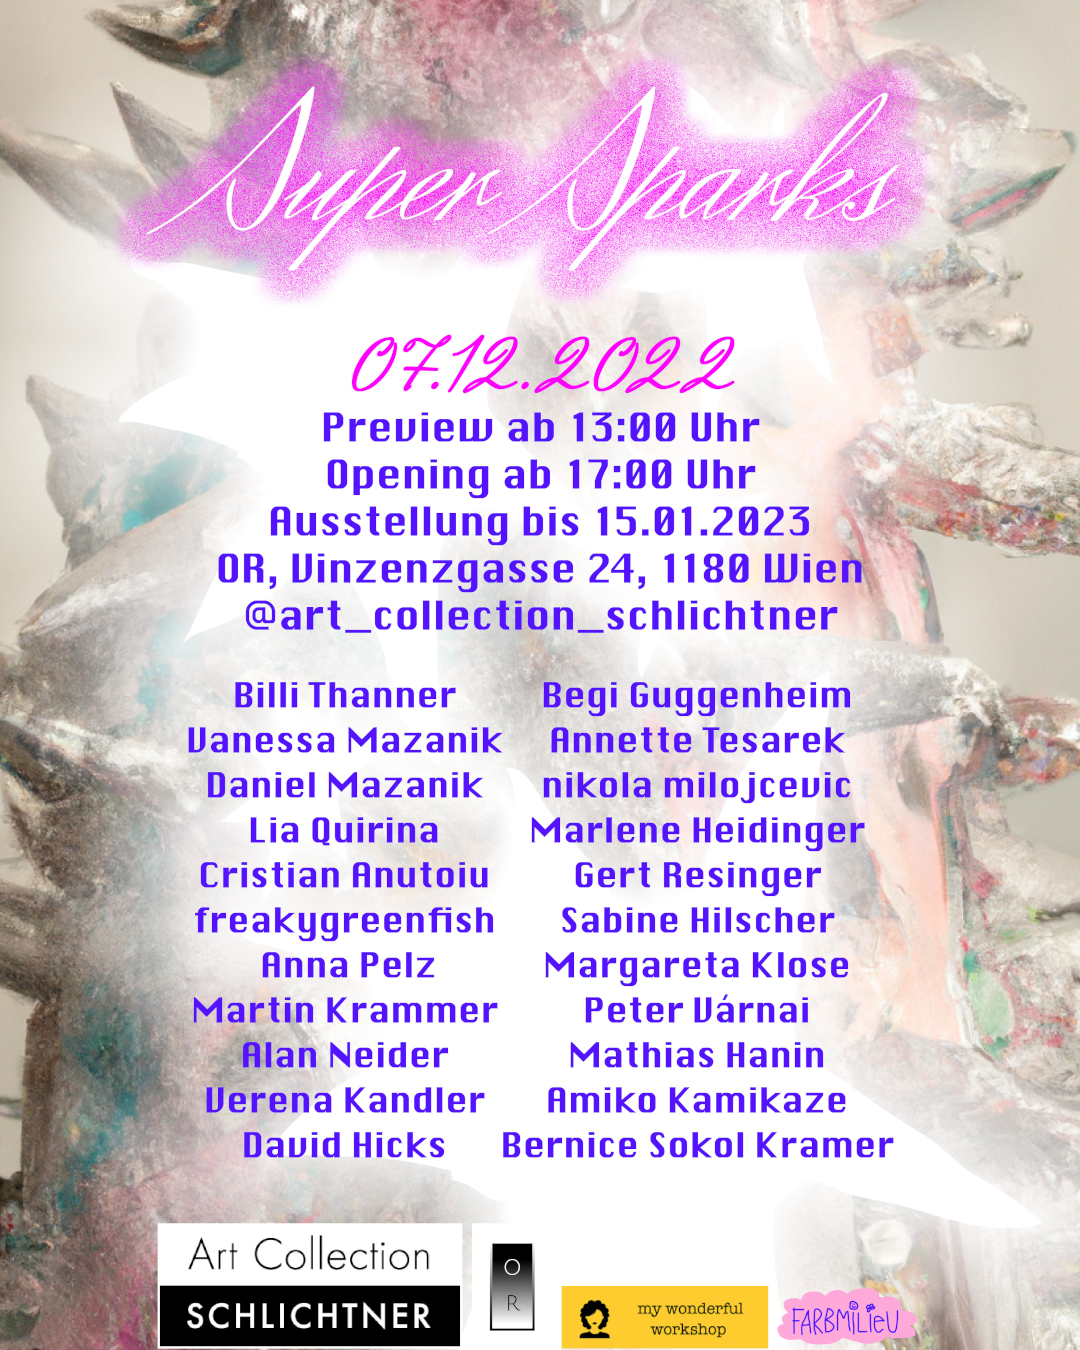 SUPER SPARKS – 07.12.2022 – 15.01.2023. Preview  13:00, Opening  17:00 Uhr. Location: OR, Vinzenzgasse 24, 1180 Wien @art_collection_schlichtner